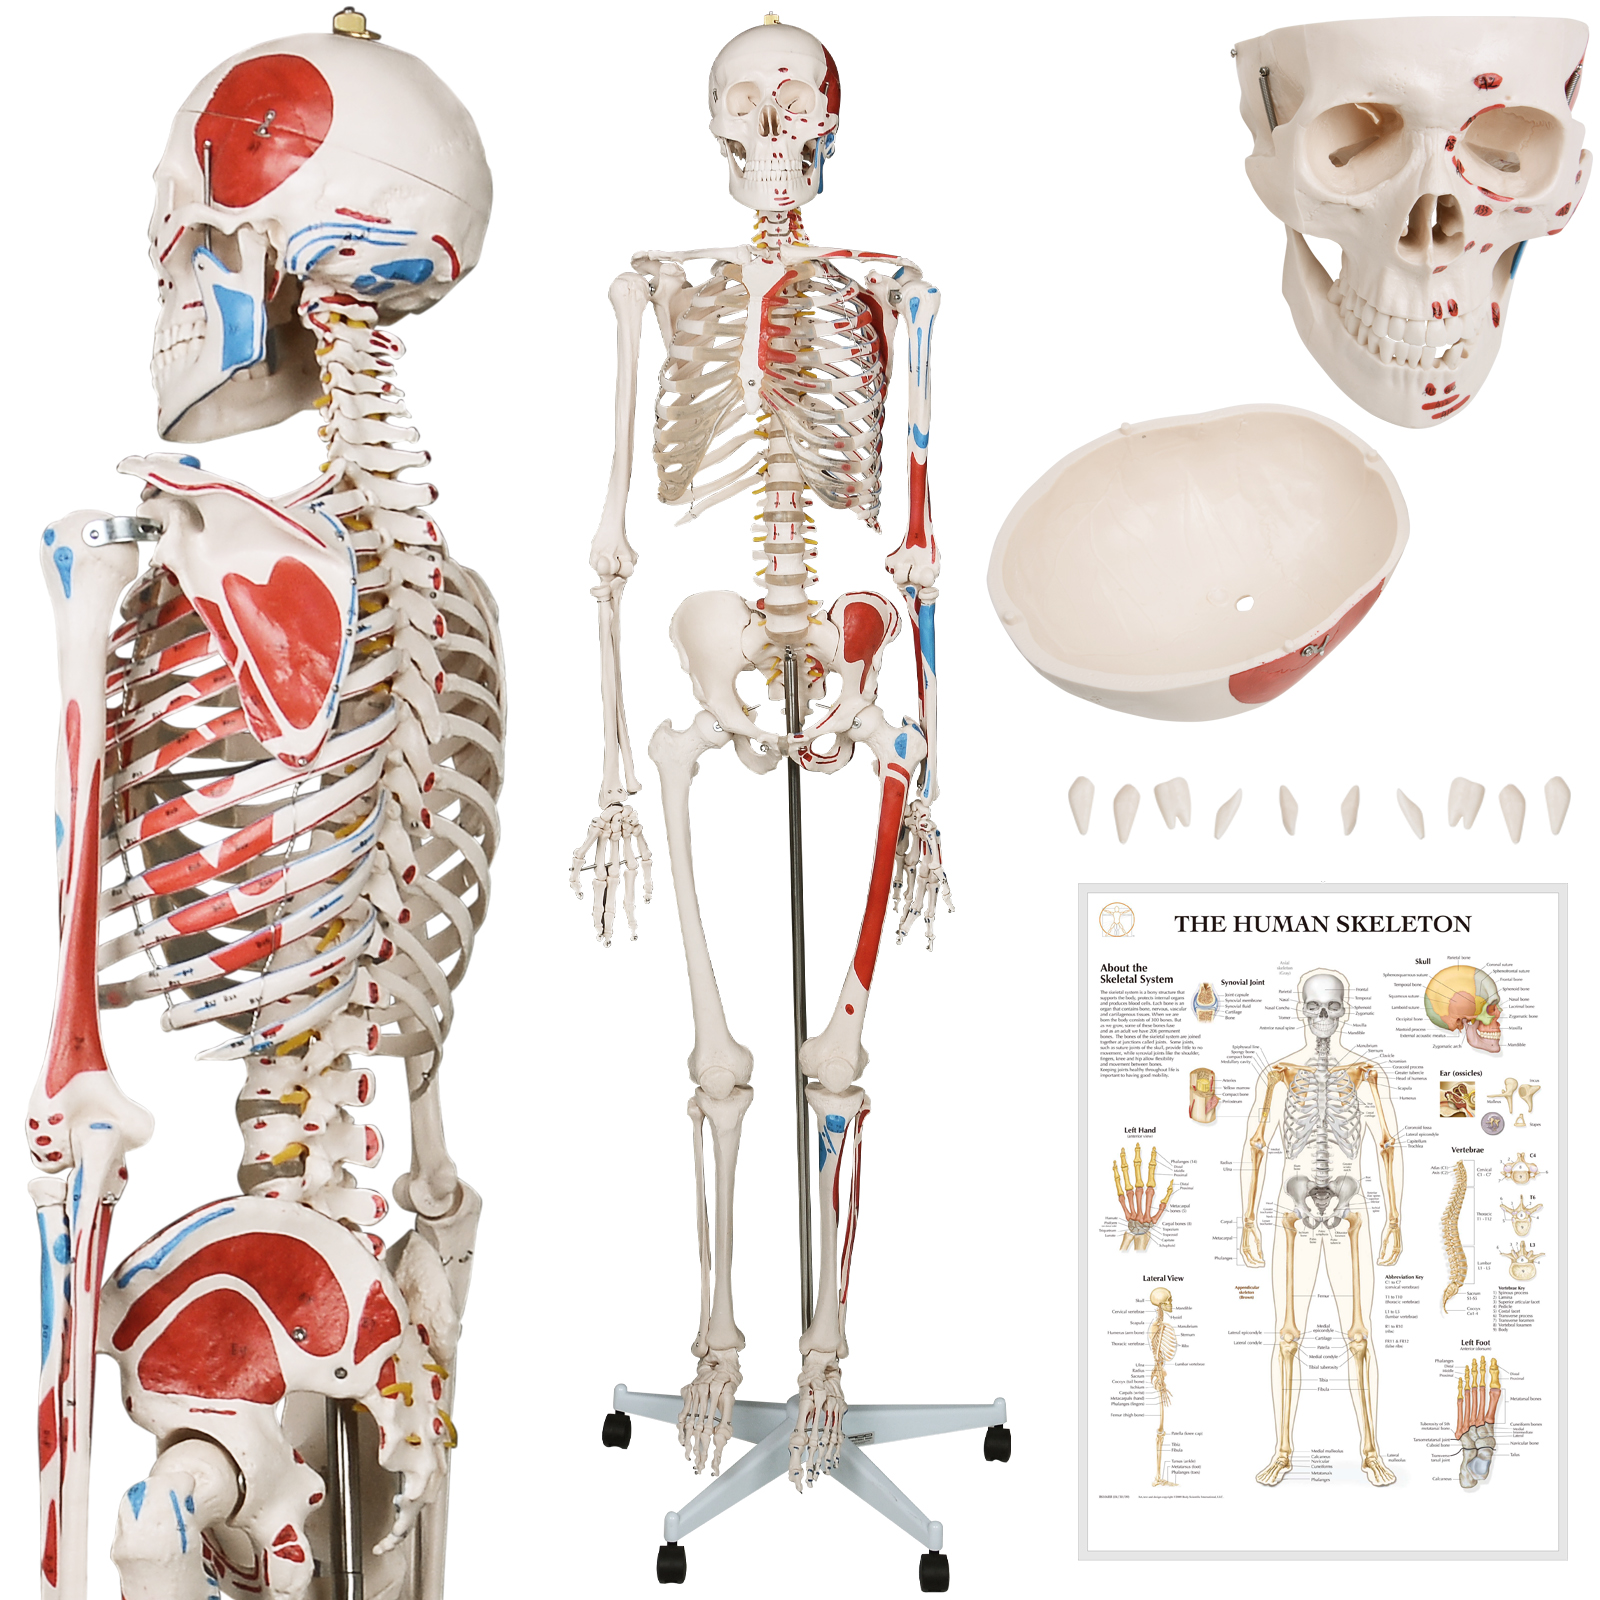 Skelett und Knochen - Anatomie